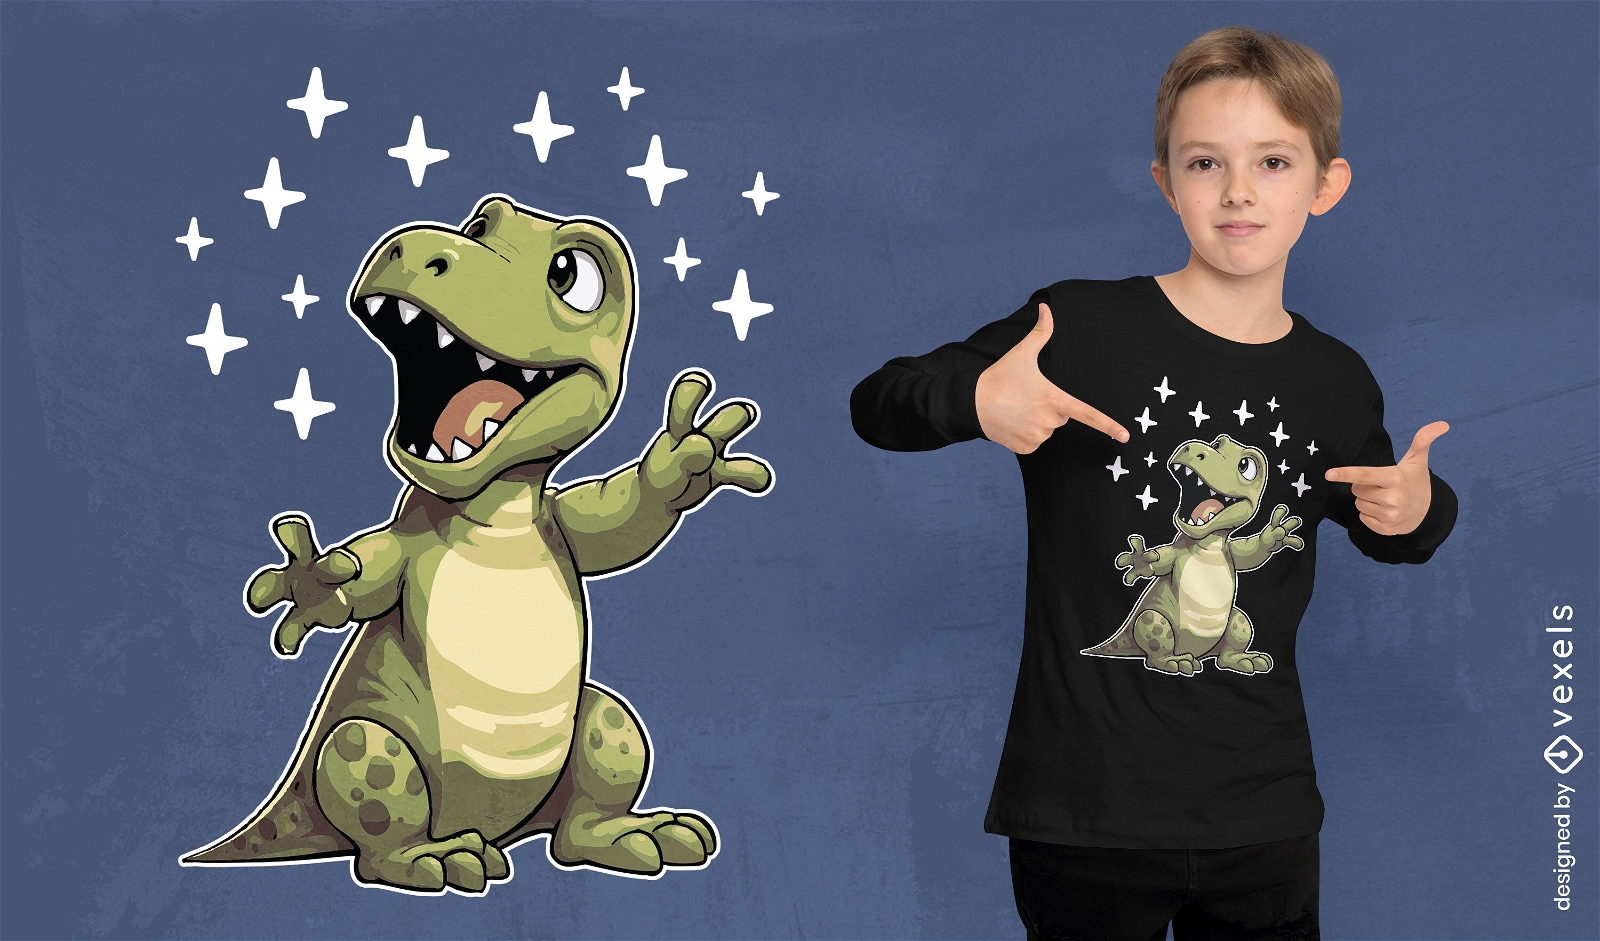 T-rex character cartoon t-shirt design